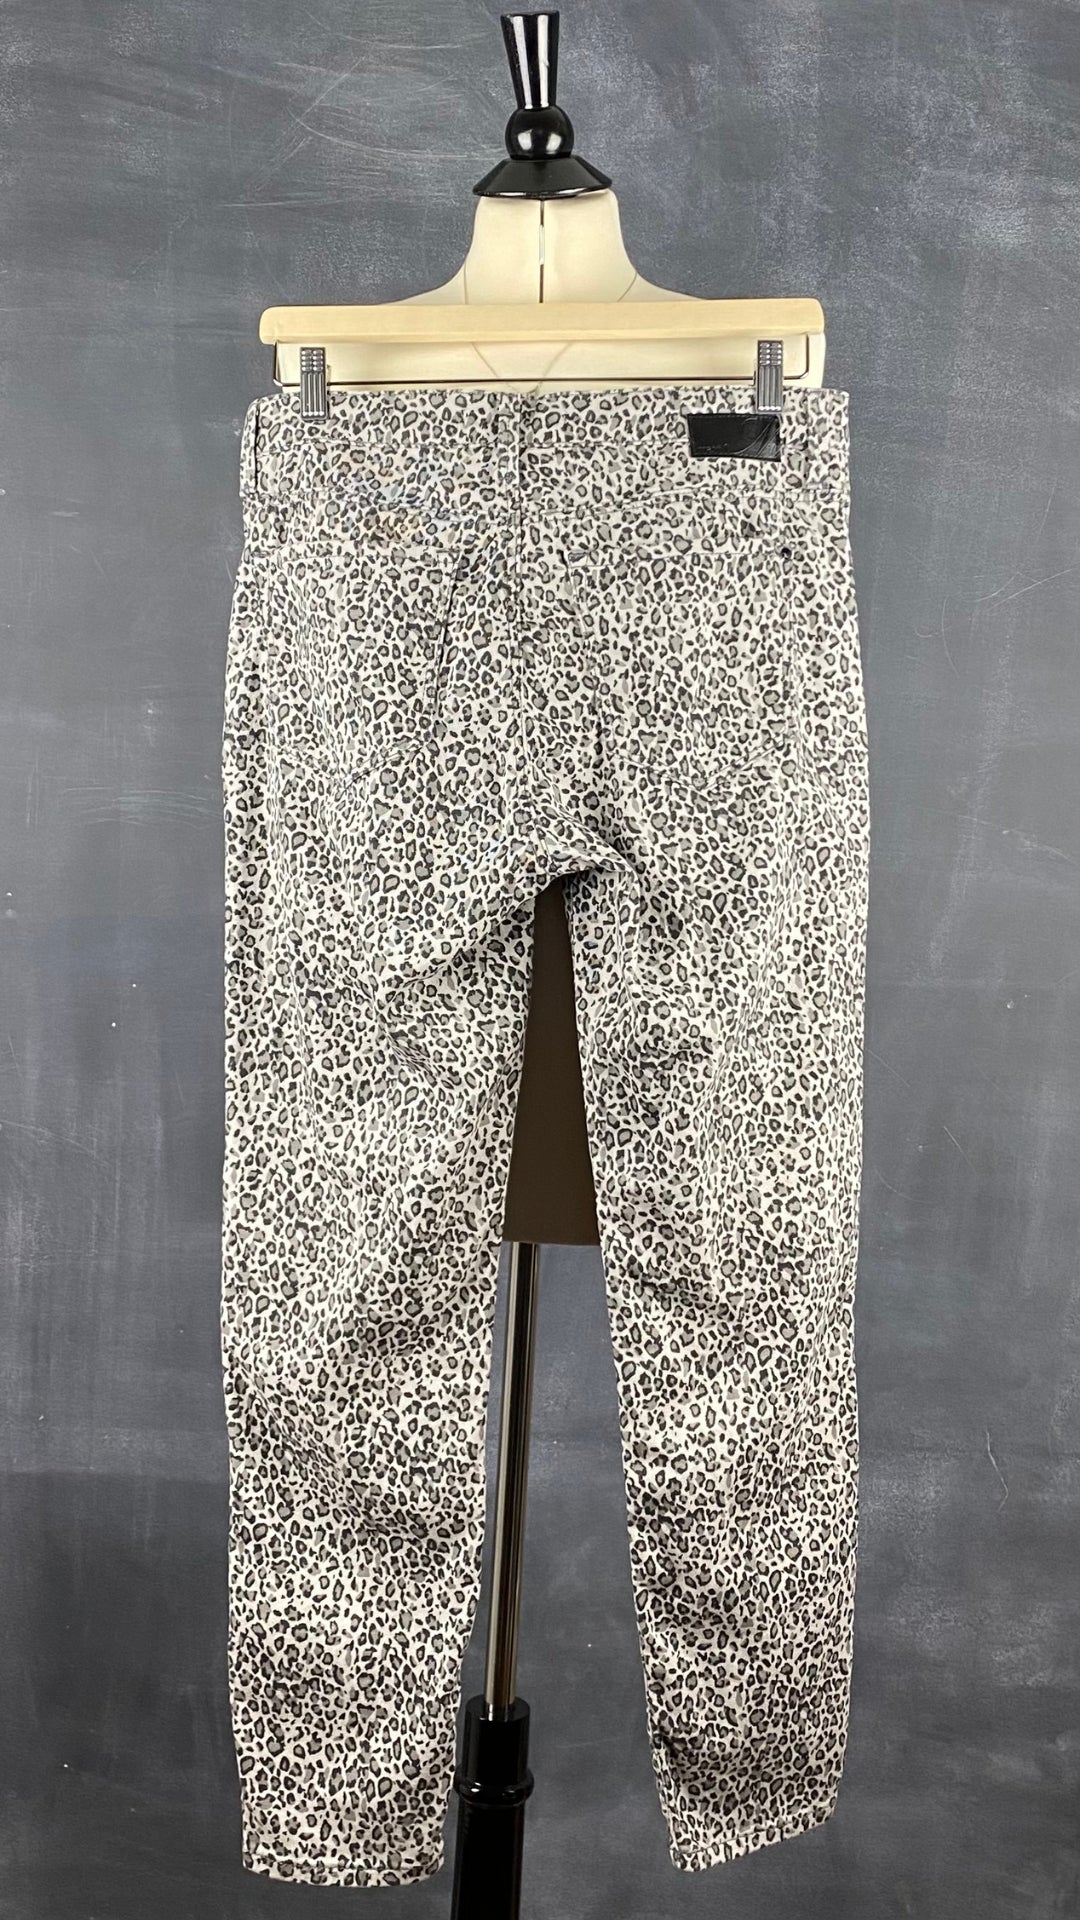 Pantalon denim coupe jeans étroit à motif léopard Mavi taille 30. Vue de dos.